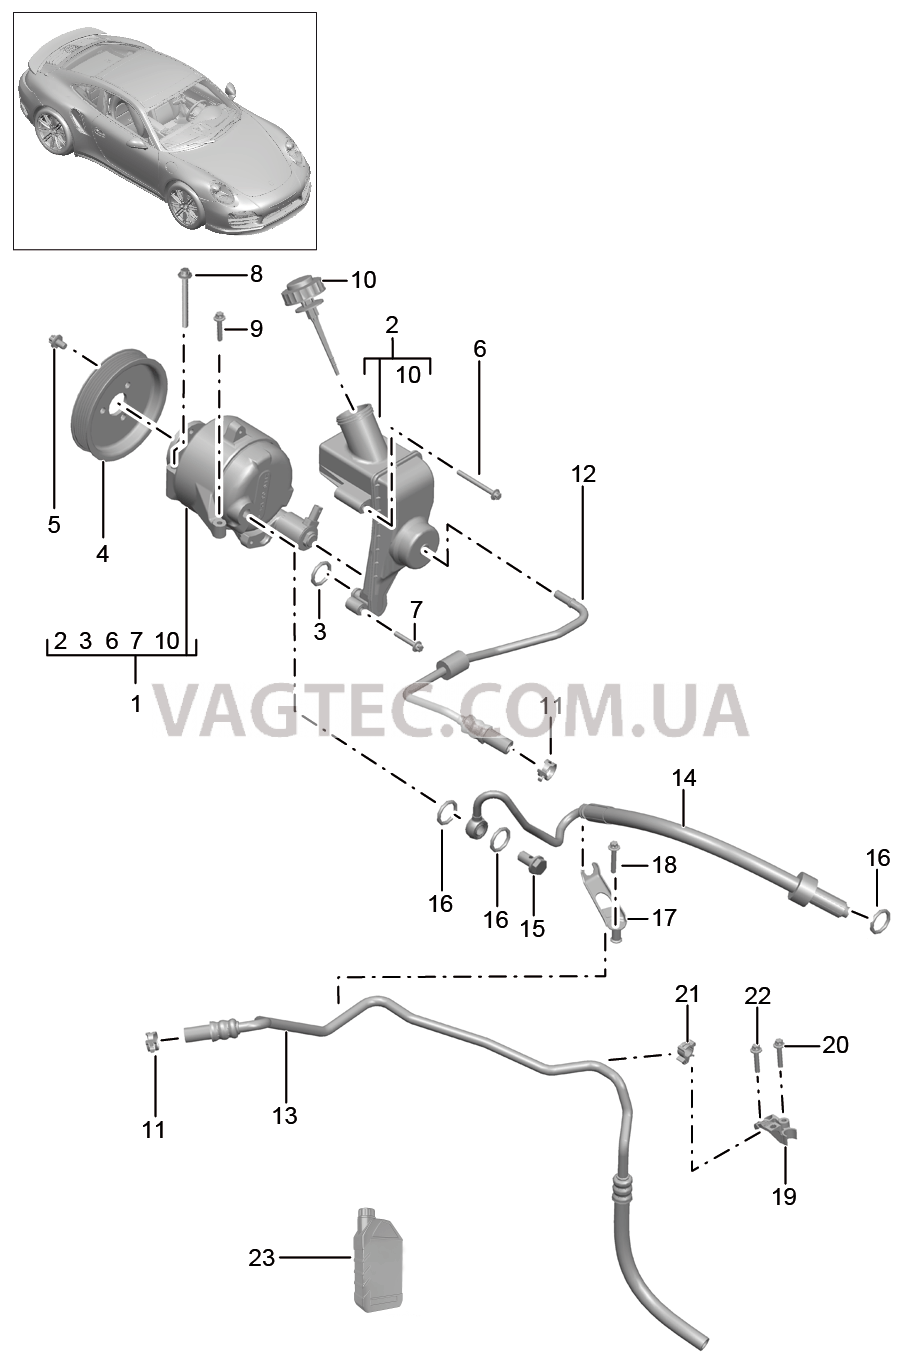 402-062 Линии, Двигатель, PDCC
						
						I031/352 для PORSCHE Porsche991Turbo 2014-2017USA